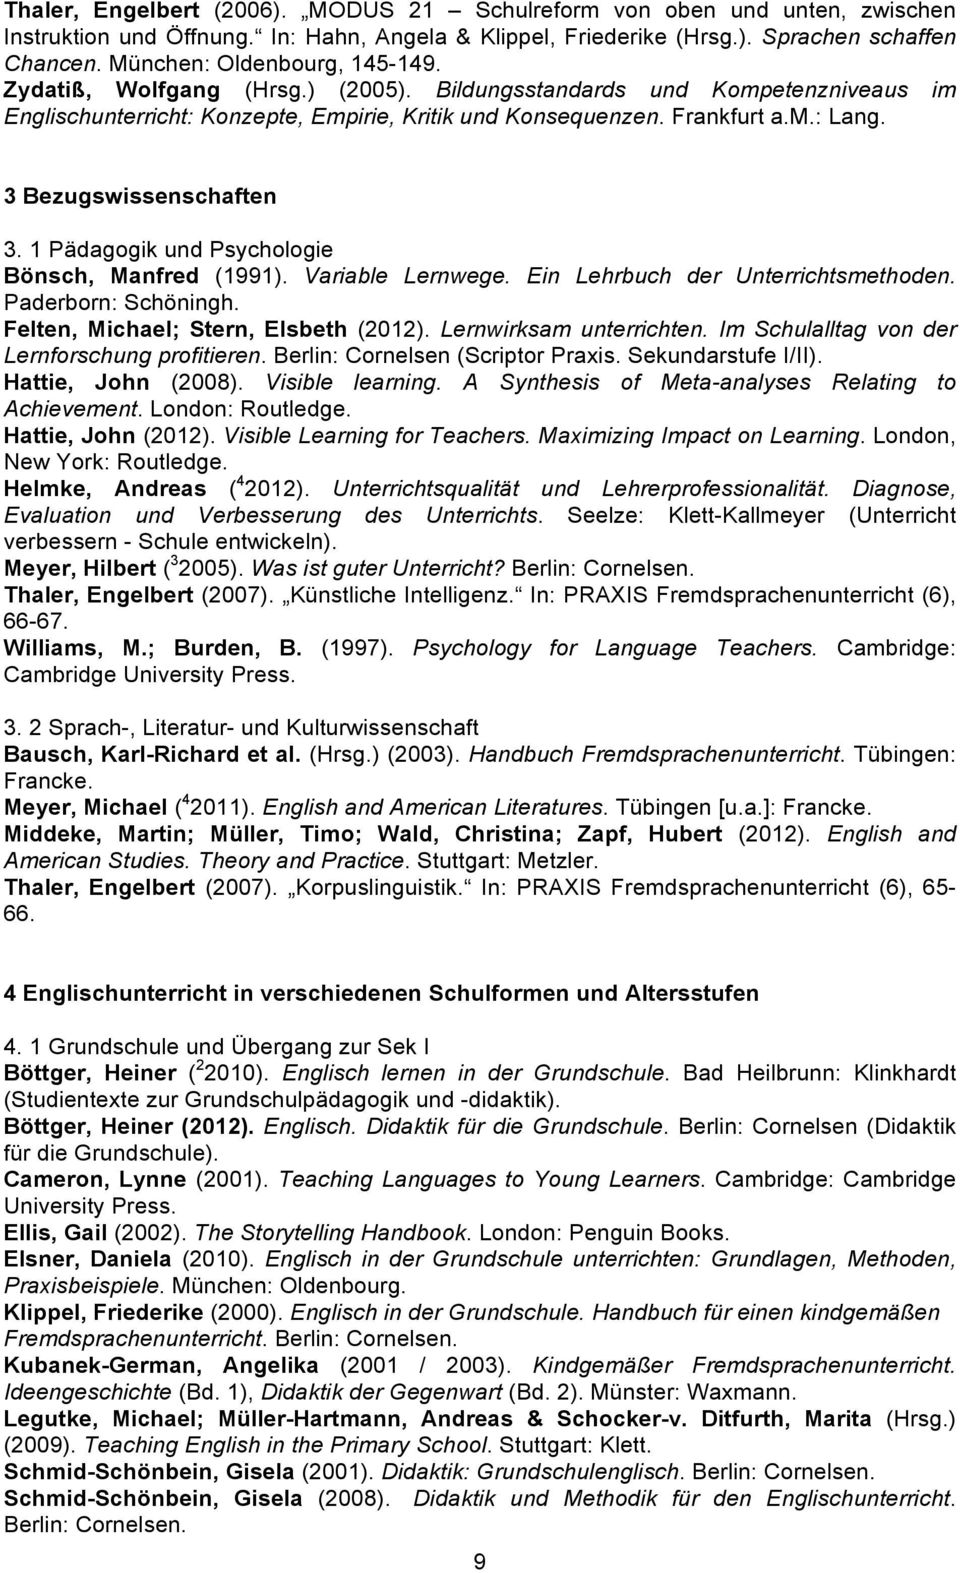 3 Bezugswissenschaften 3. 1 Pädagogik und Psychologie Bönsch, Manfred (1991). Variable Lernwege. Ein Lehrbuch der Unterrichtsmethoden. Paderborn: Schöningh. Felten, Michael; Stern, Elsbeth (2012).